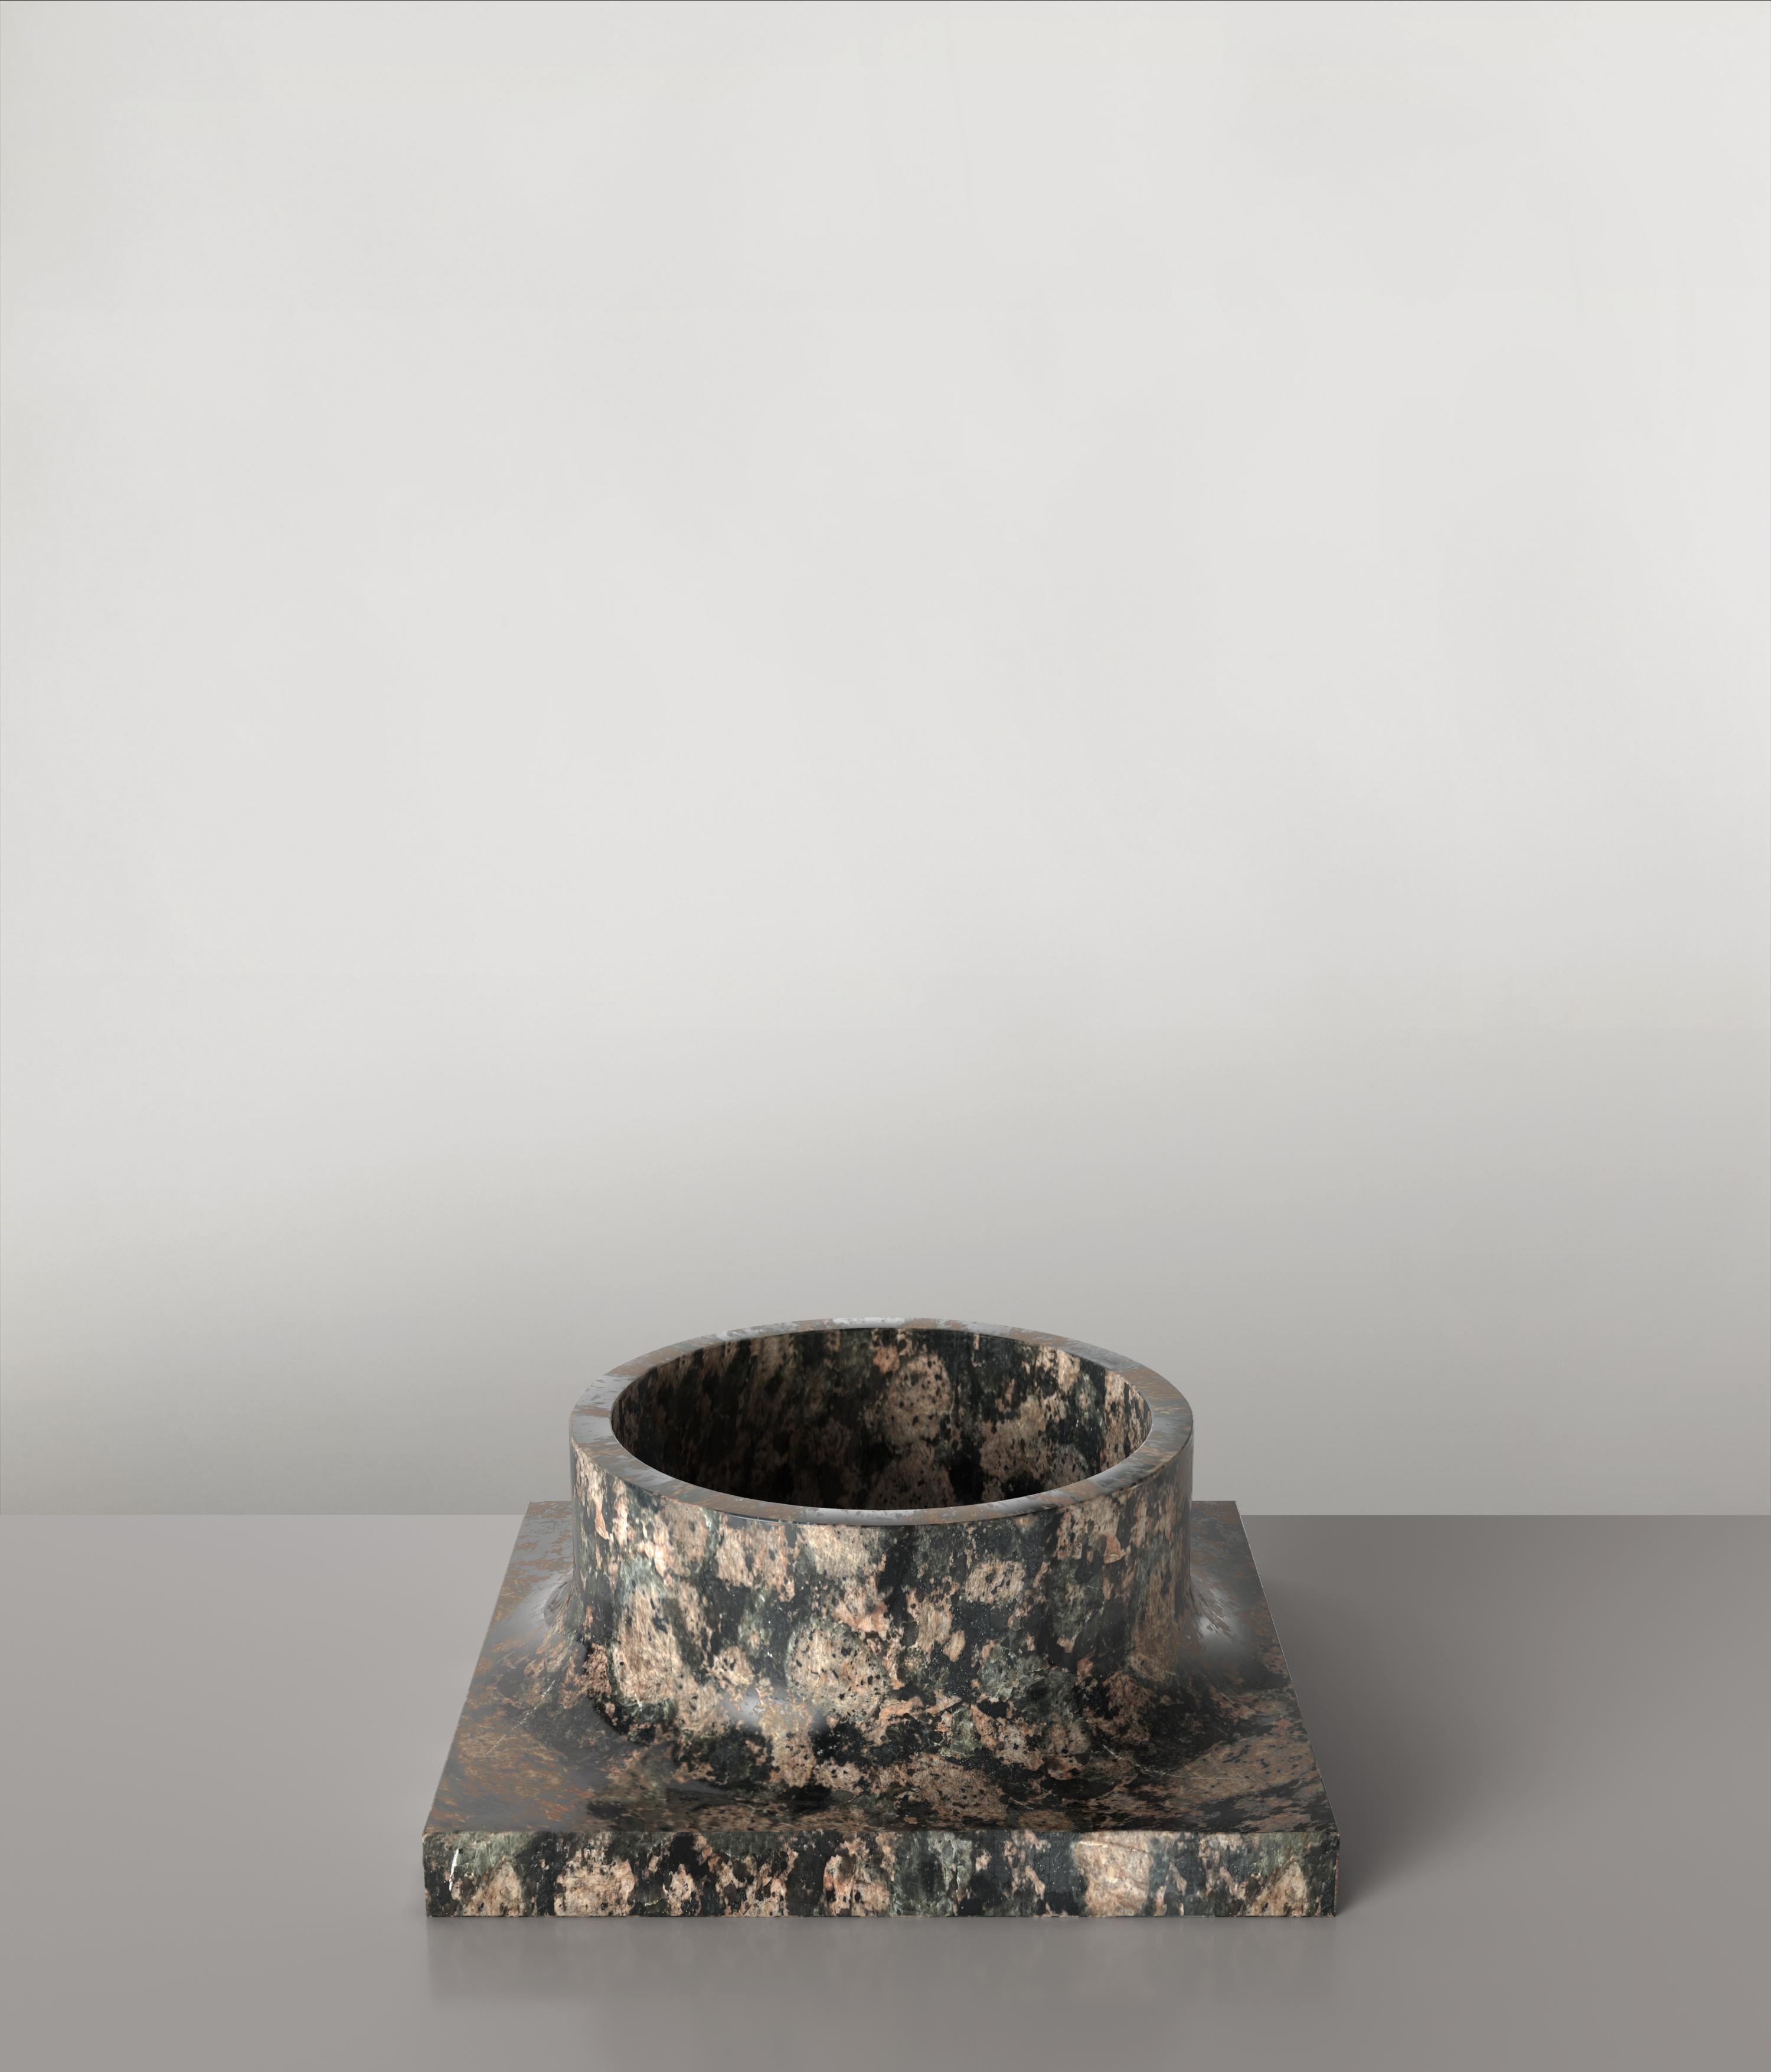 Palazzo V1 est un vase sculptural du 21e siècle réalisé par des artisans italiens en pierre de granit. Il fait partie du langage de conception de collection Palazzo qui a été développé par l'équipe de recherche artistique de l'Edizione Limitata à